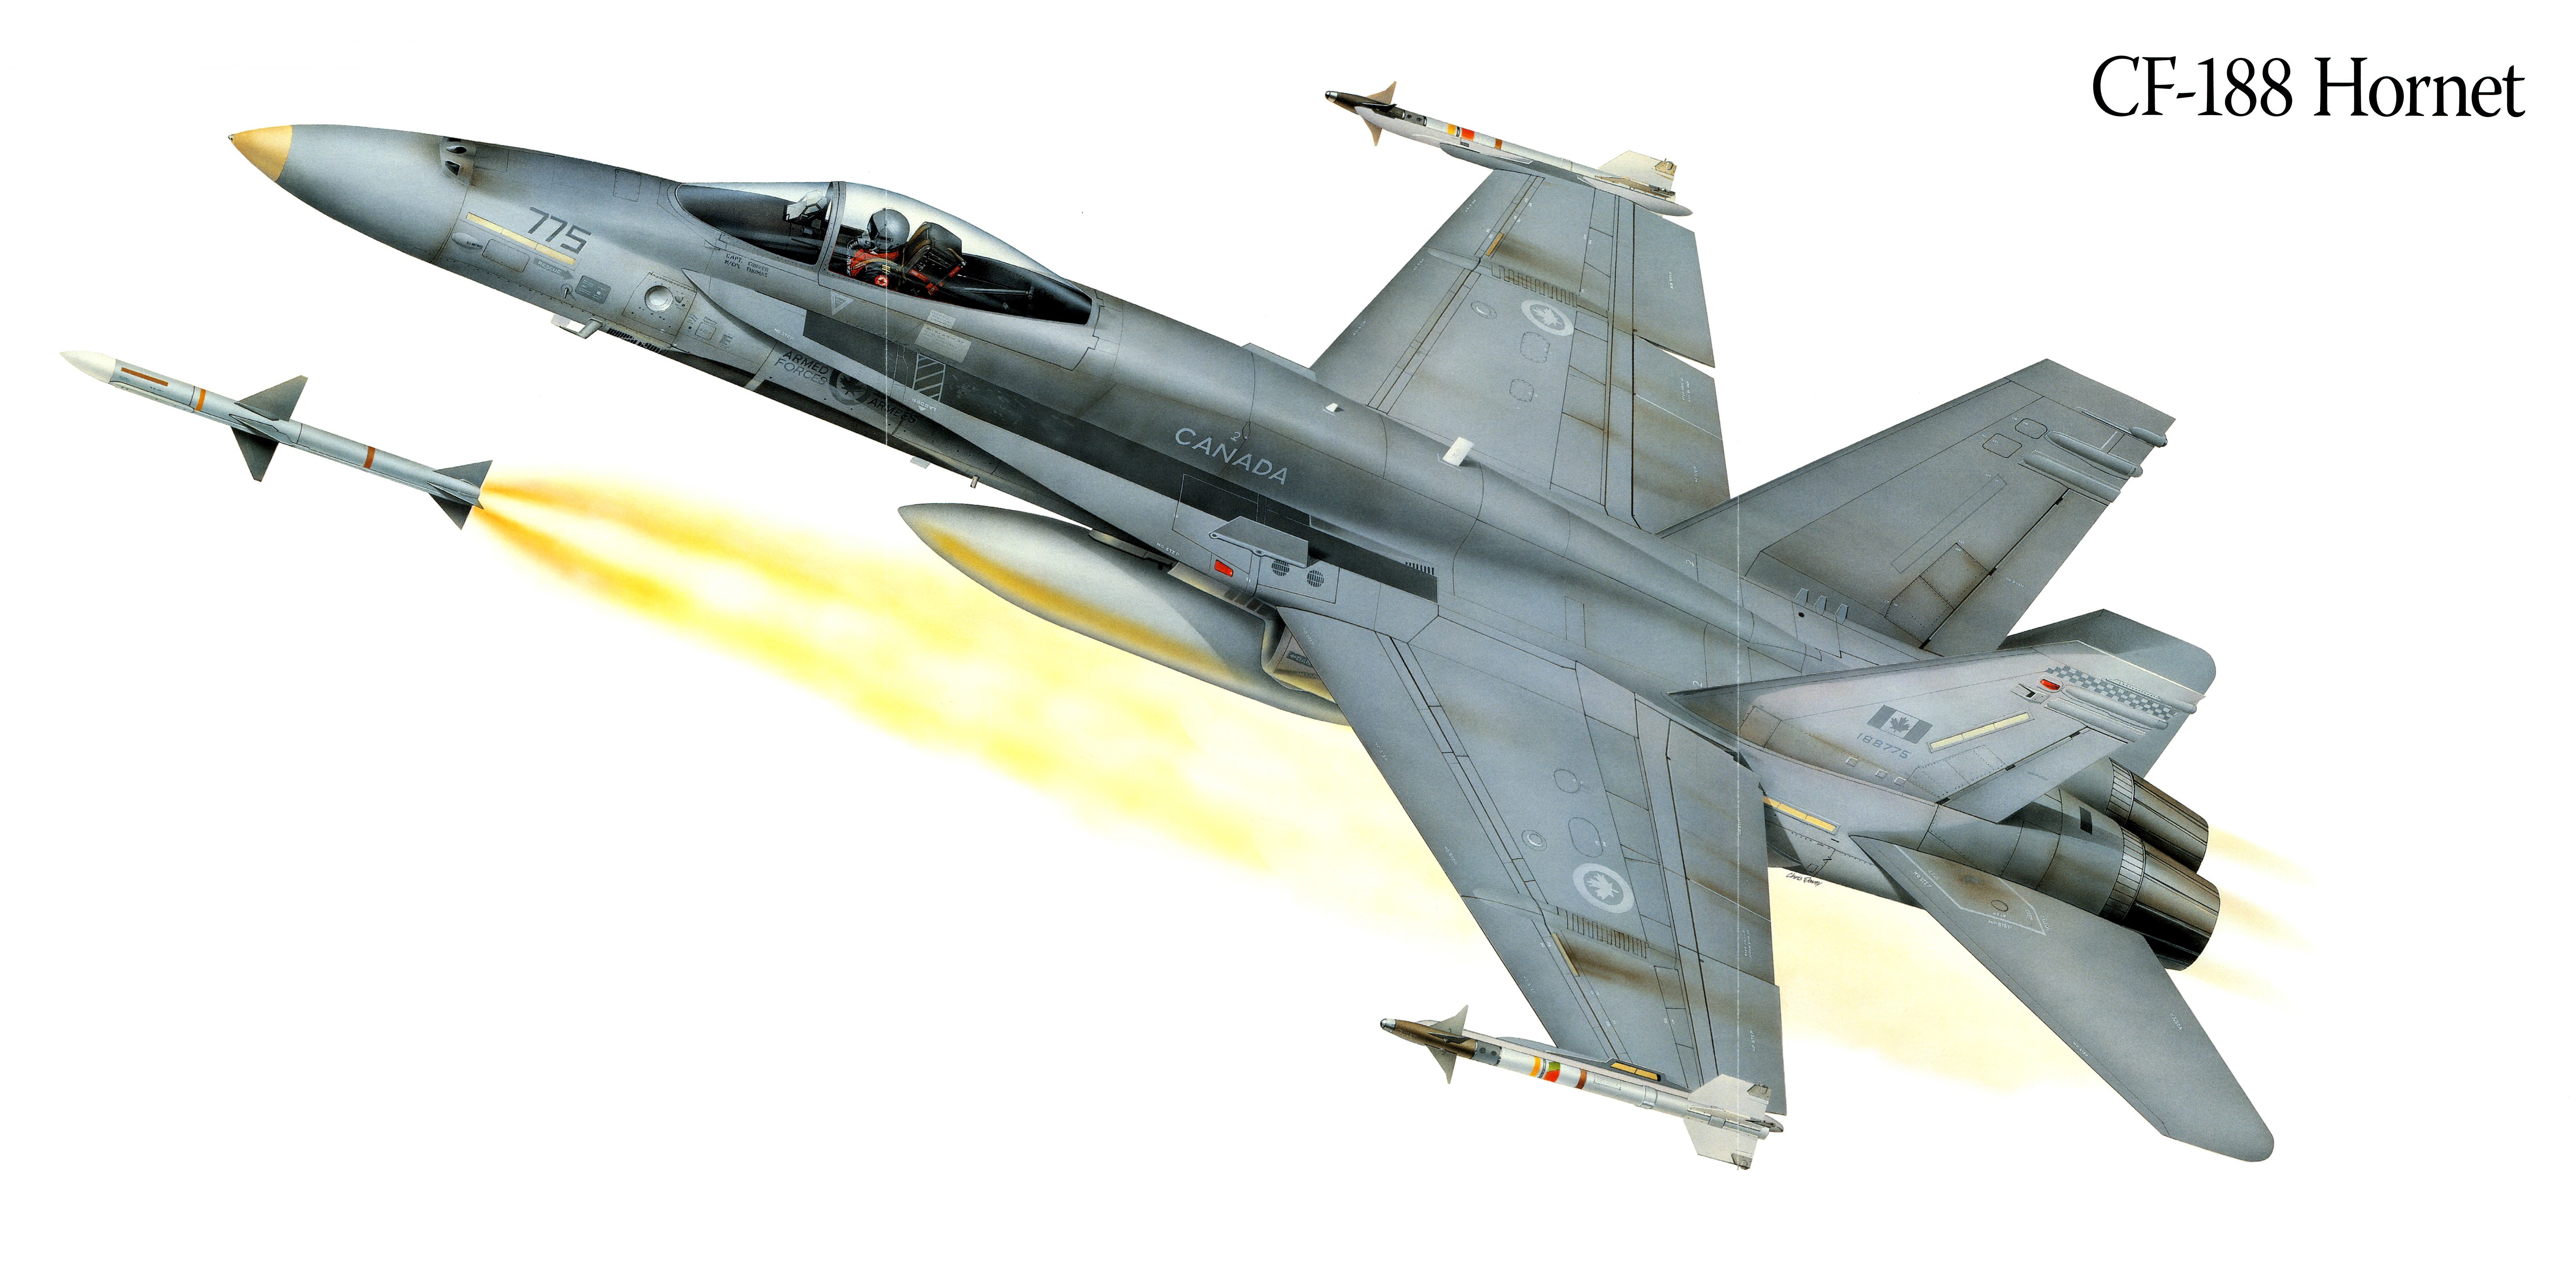 Картинка Истребители Самолеты CF-188 Hornet Рисованные Авиация 7028x3514